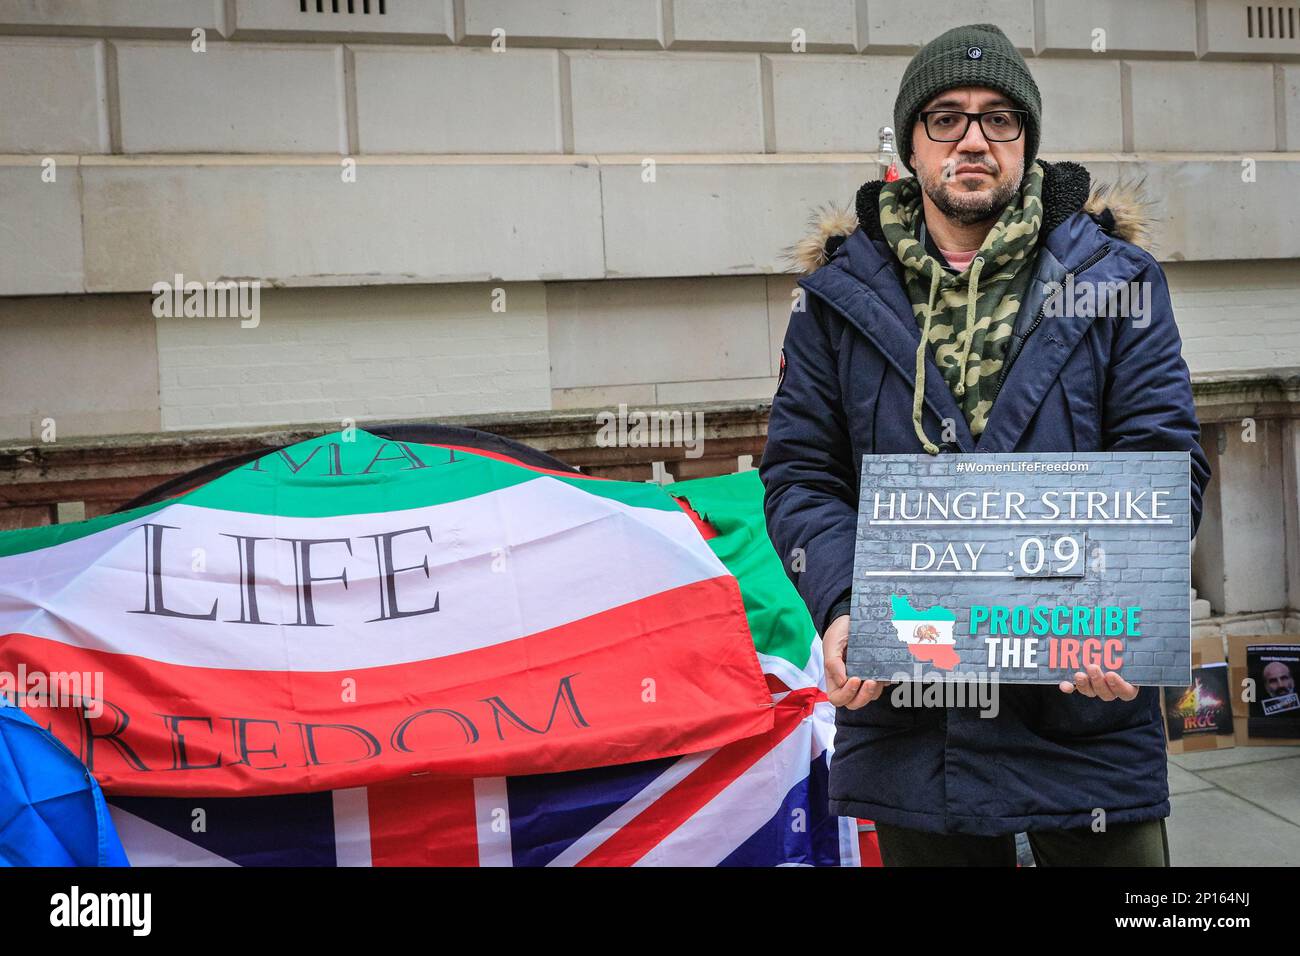 Westminster, Londra, Regno Unito. 03rd Mar, 2023. Vahid Beheshti, che dichiara di essere un giornalista, è visto il giorno 9 del suo sciopero della fame al di fuori dell'Ufficio degli Esteri britannico a Westminster. Beheshti chiede che l'IRGC (corpo della Guardia rivoluzionaria Islamica) sia inserito nella lista delle organizzazioni terroristiche internazionali del Regno Unito. L'IRGC, un ramo dell'esercito iraniano, è considerato sempre più oppressivo e considerato un'organizzazione terroristica dagli Stati Uniti dal 2019, mentre l'UE ha recentemente approvato un emendamento che chiede agli stati membri di fare simili. Credit: Imageplotter/Alamy Live News Foto Stock